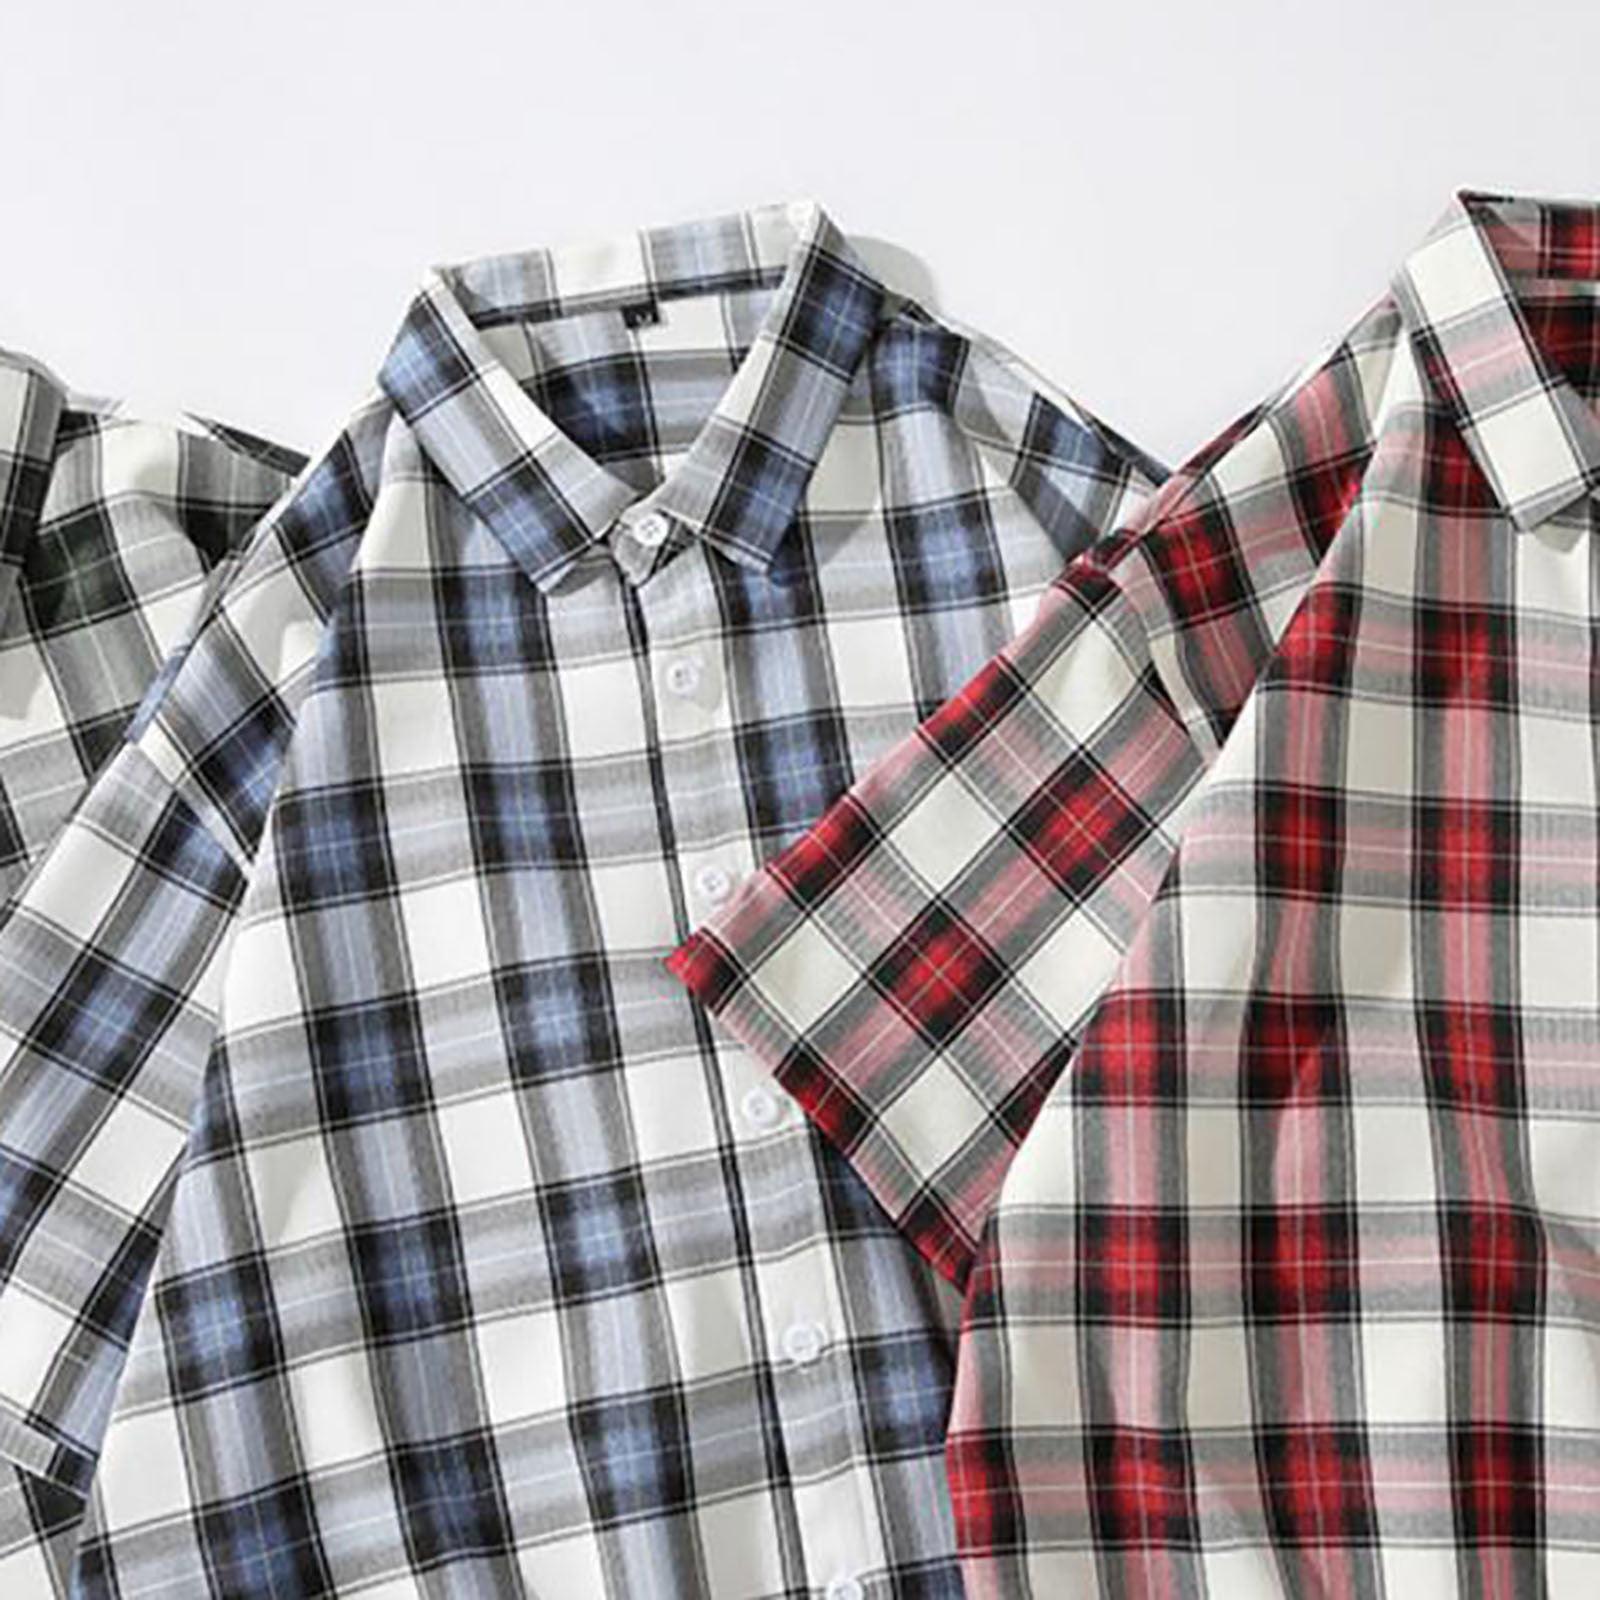 Golf Shirts for Men Summer Vintage Printed Shirt Men's Short